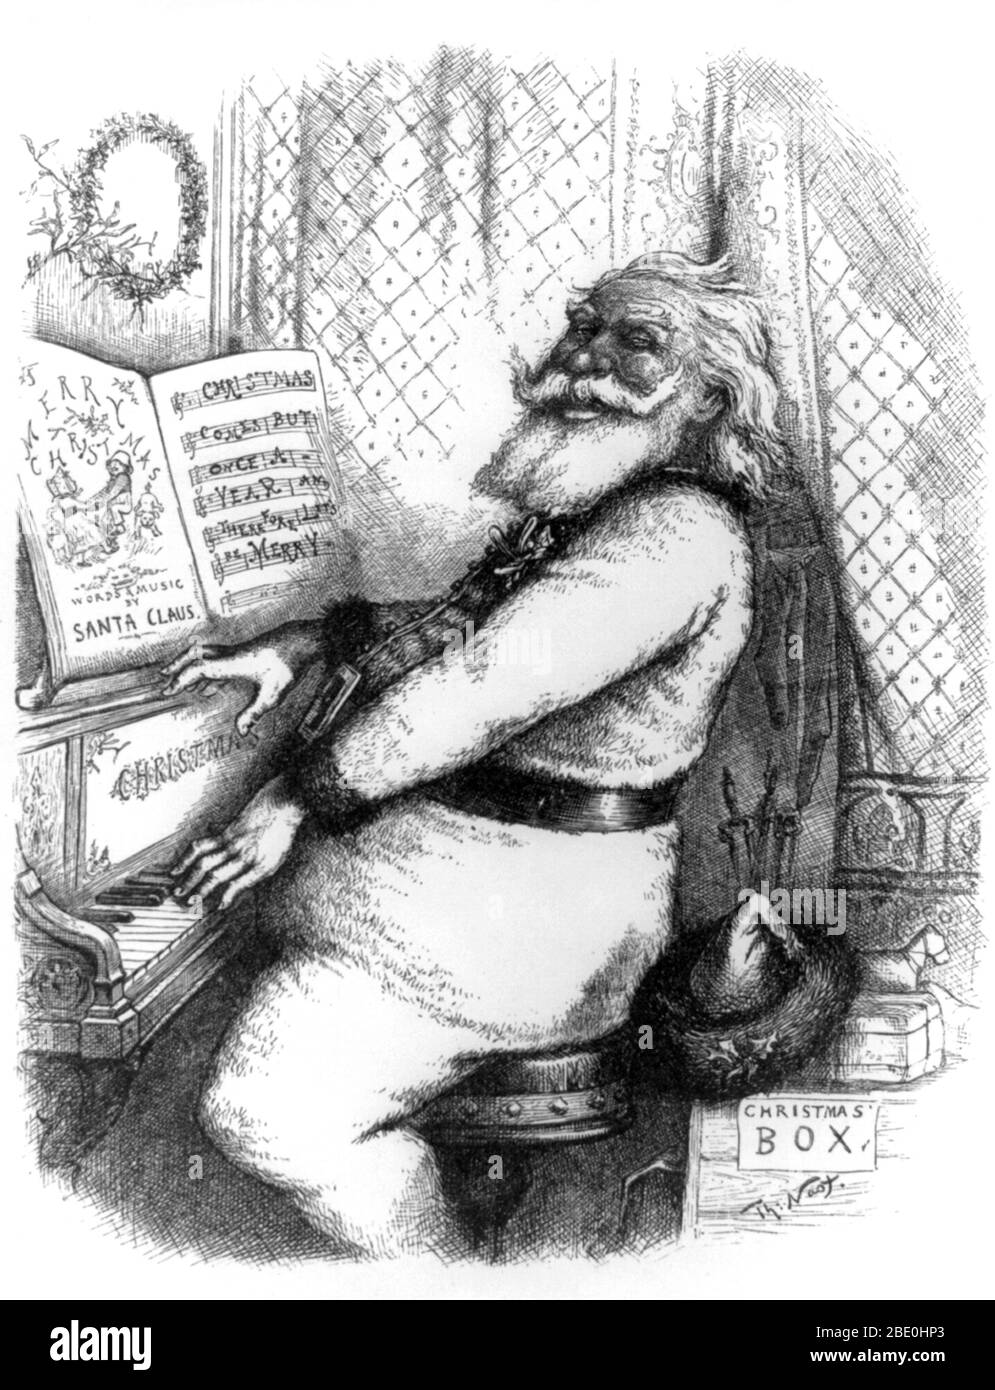 Titulado: "Porque es un buen compañero alegre, así que digamos que todos nosotros" grabado de Santa Claus tocando el piano. Santa Claus, también conocido como San Nicolás, Padre de Navidad, Kris Kringle y simplemente Santa, es una figura con orígenes legendarios, históricos y folclóricos que, en muchas culturas occidentales, se dice que traer regalos a los hogares de los buenos niños el 24 de diciembre, la noche antes del día de Navidad. Generalmente es representado como un hombre portoso, alegre, con barba blanca, a veces con gafas, con un abrigo rojo con cuello y puños blancos, pantalones rojos con puño blanco, y cinturón y botas de cuero negro y Foto de stock